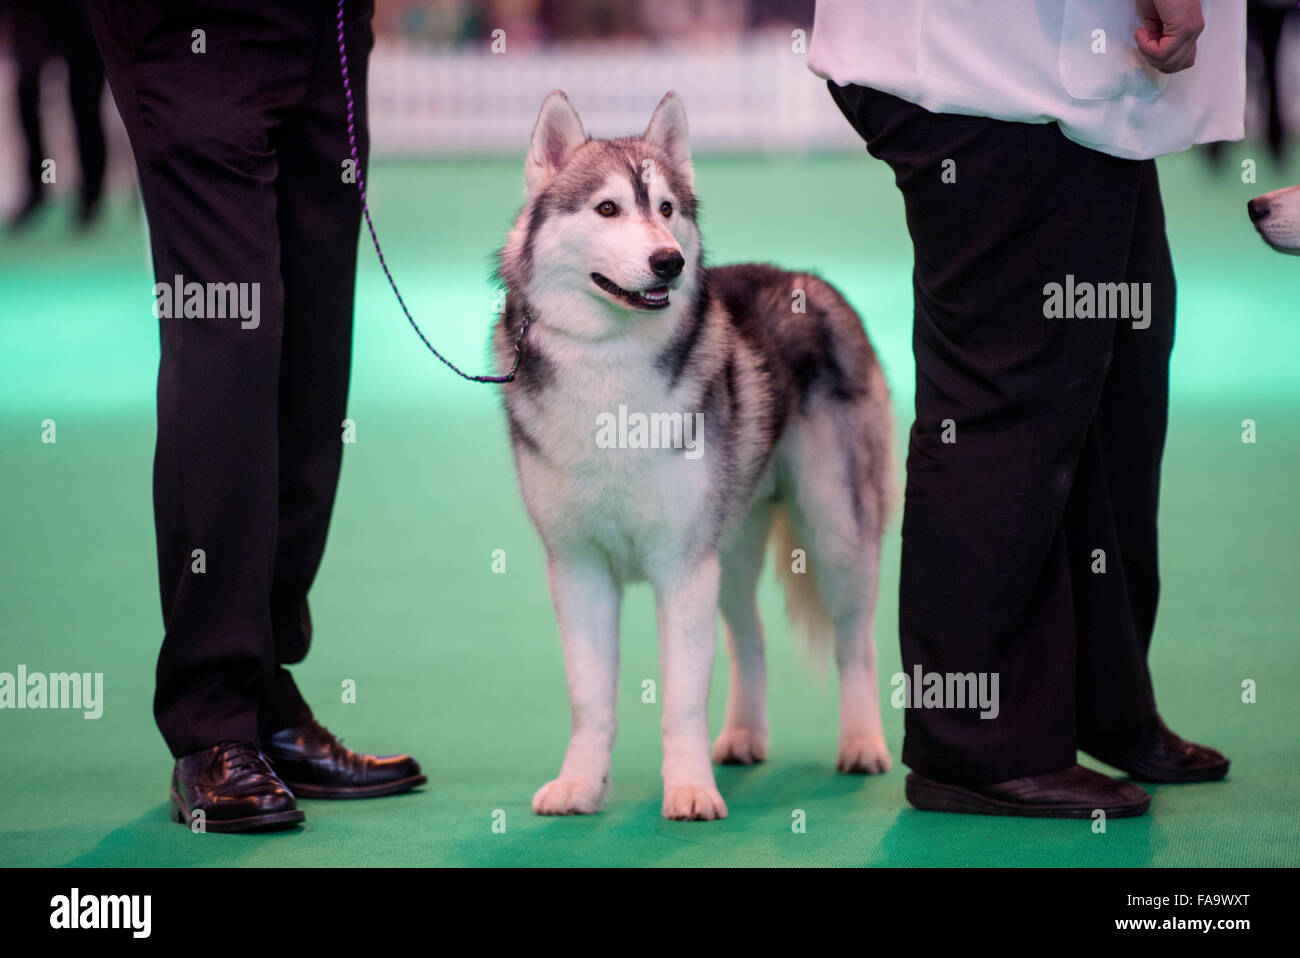 Crufts dog show à NEC, Birmingham - un chien husky de Sibérie montrant dans la section UK 2015 Breeders Cup Banque D'Images